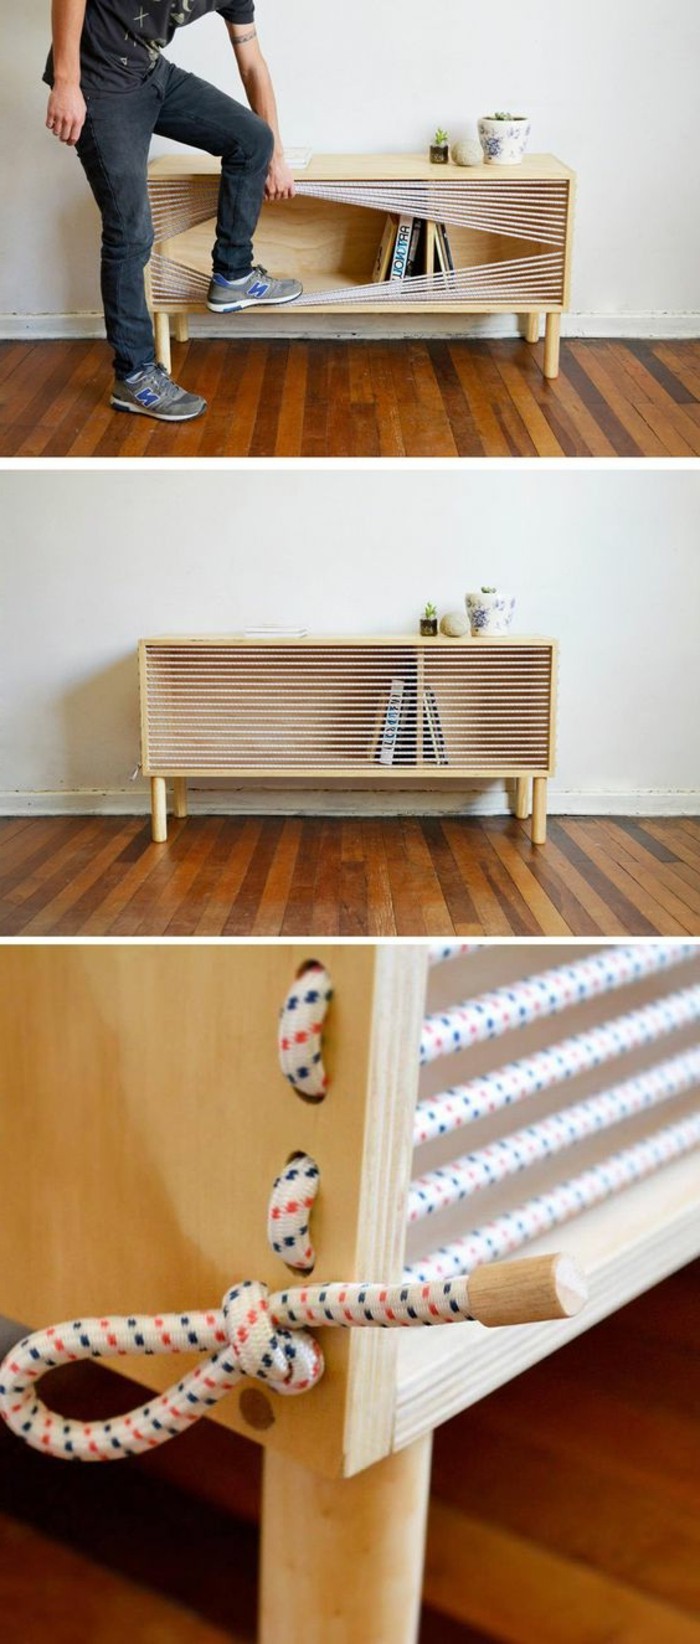 muebles de bricolaje Do-it-yourself muebles de madera-cuerdas más pequeño mueble-off con-